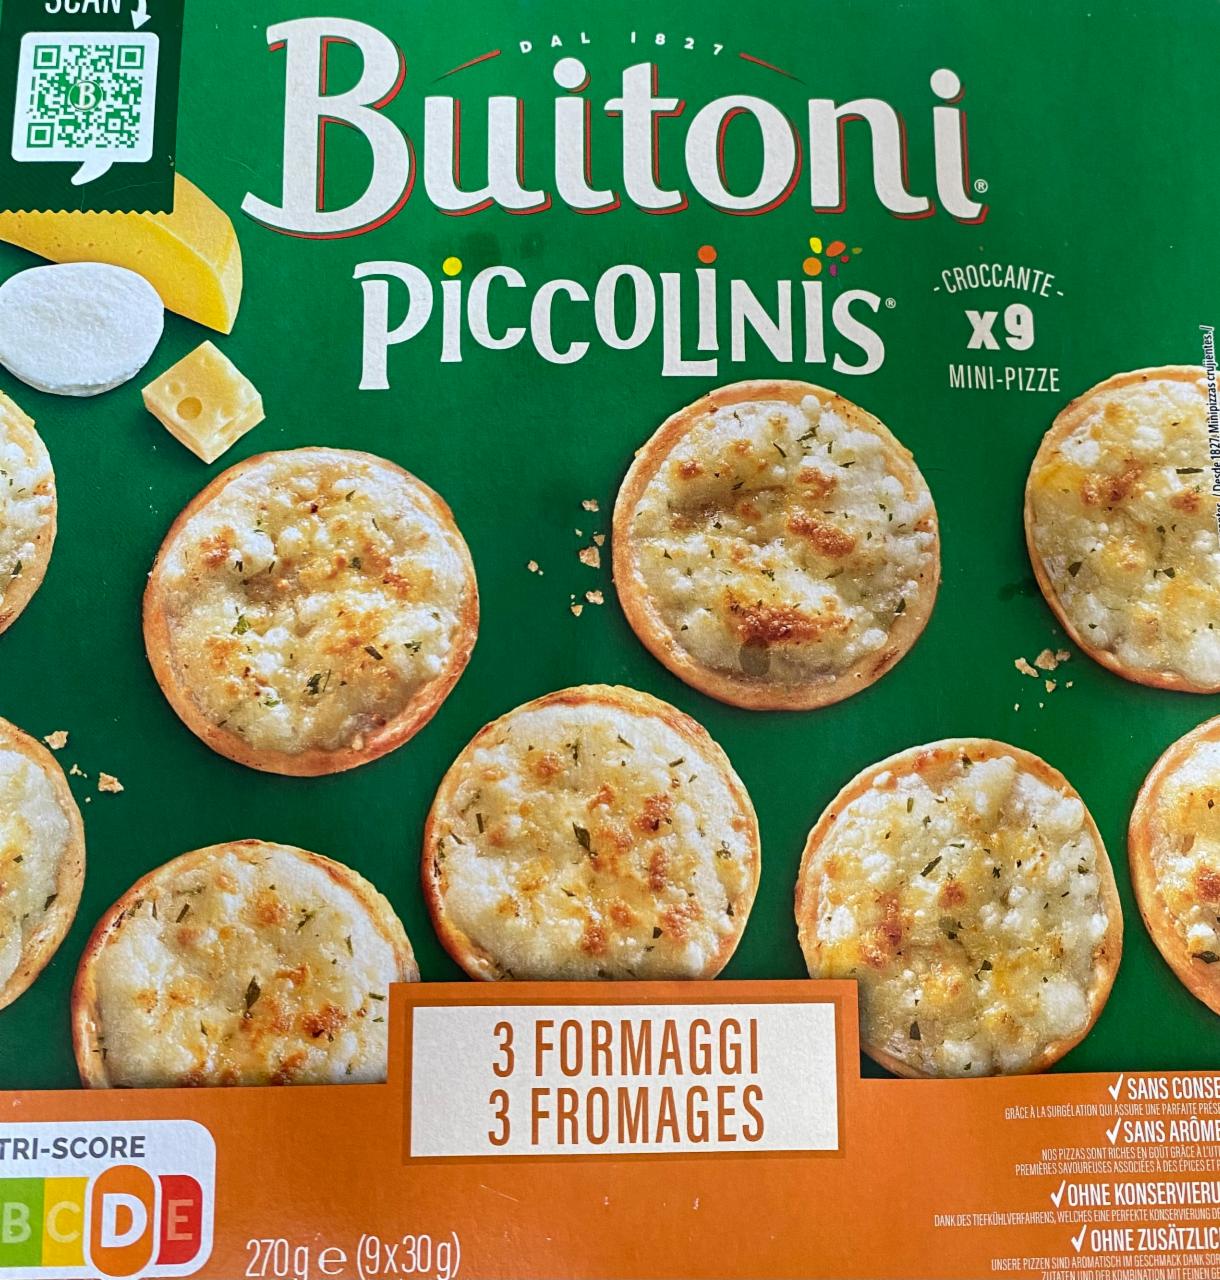 Fotografie - Piccolinis 3 Formaggi mini-pizze Buitoni